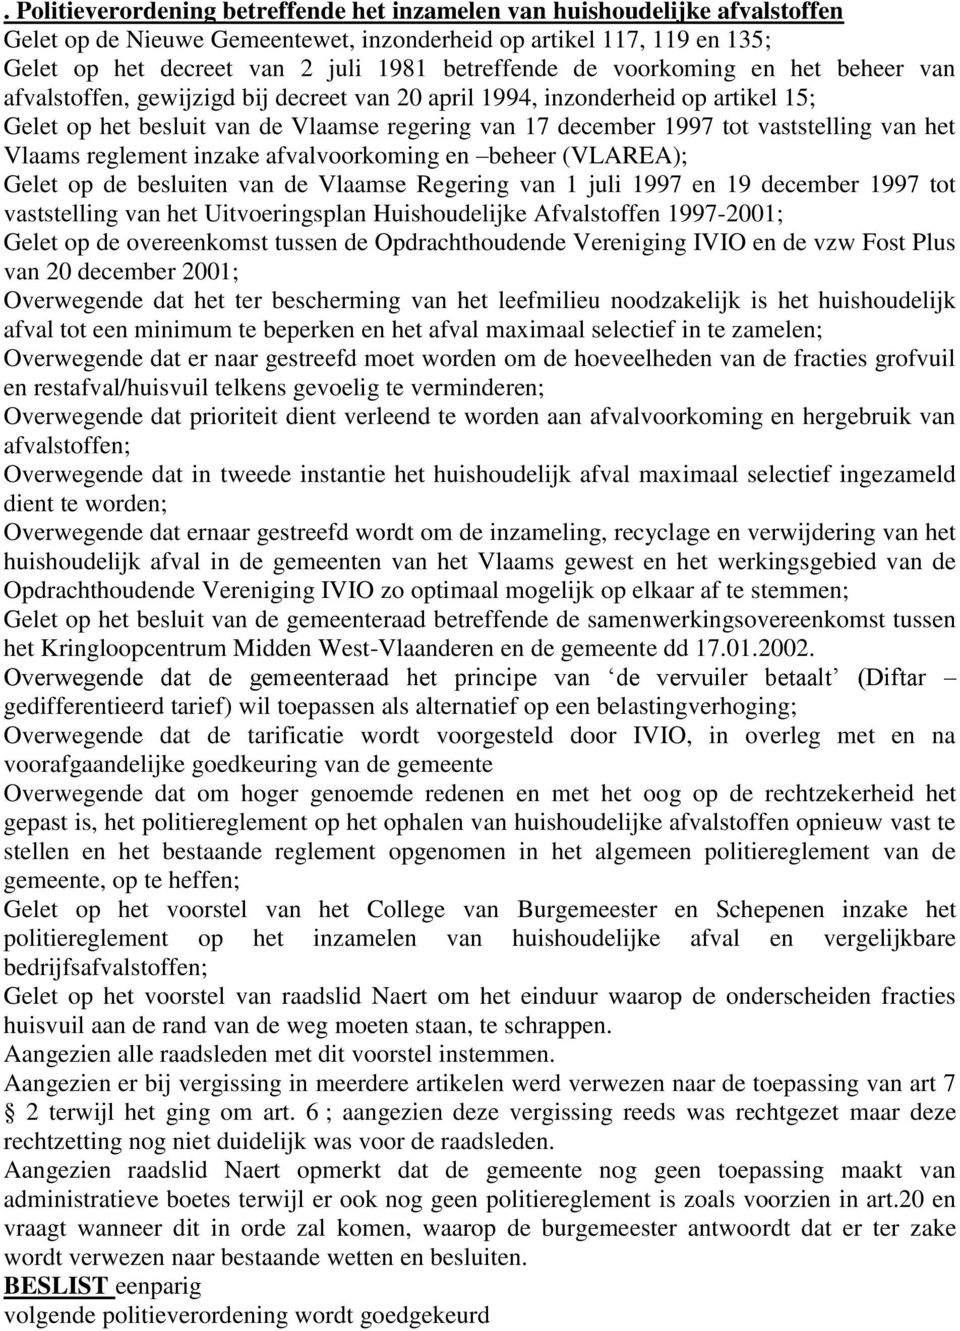 vaststelling van het Vlaams reglement inzake afvalvoorkoming en beheer (VLAREA); Gelet op de besluiten van de Vlaamse Regering van 1 juli 1997 en 19 december 1997 tot vaststelling van het